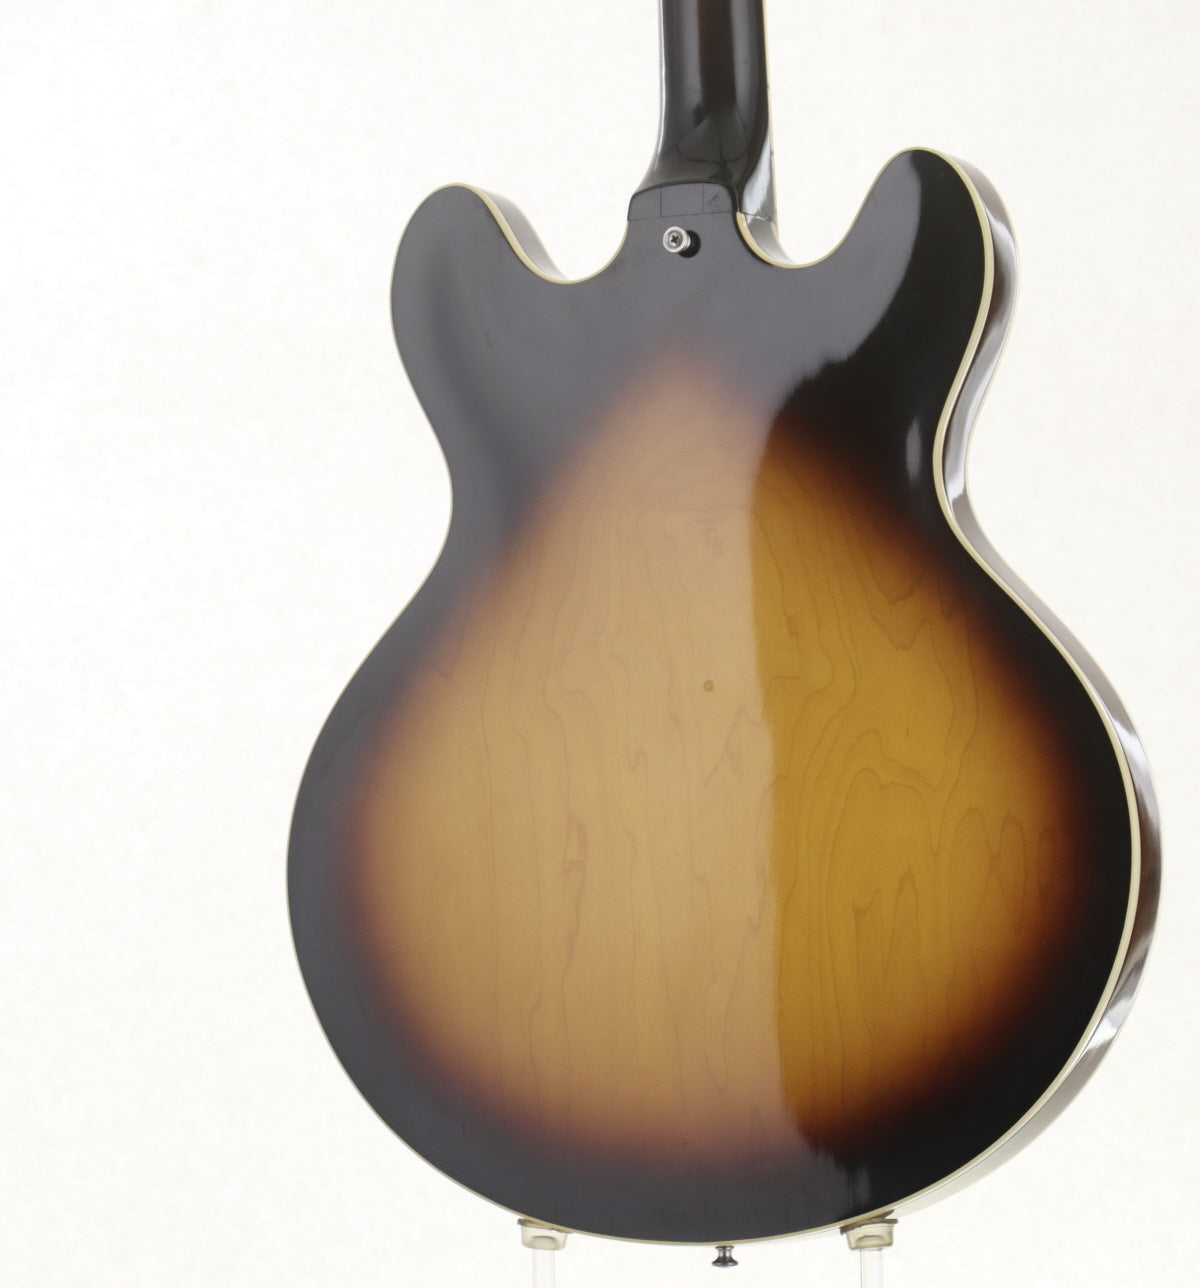 [SN 00107877] USED Gibson / ES-335TD Sunburst 1976 [10]